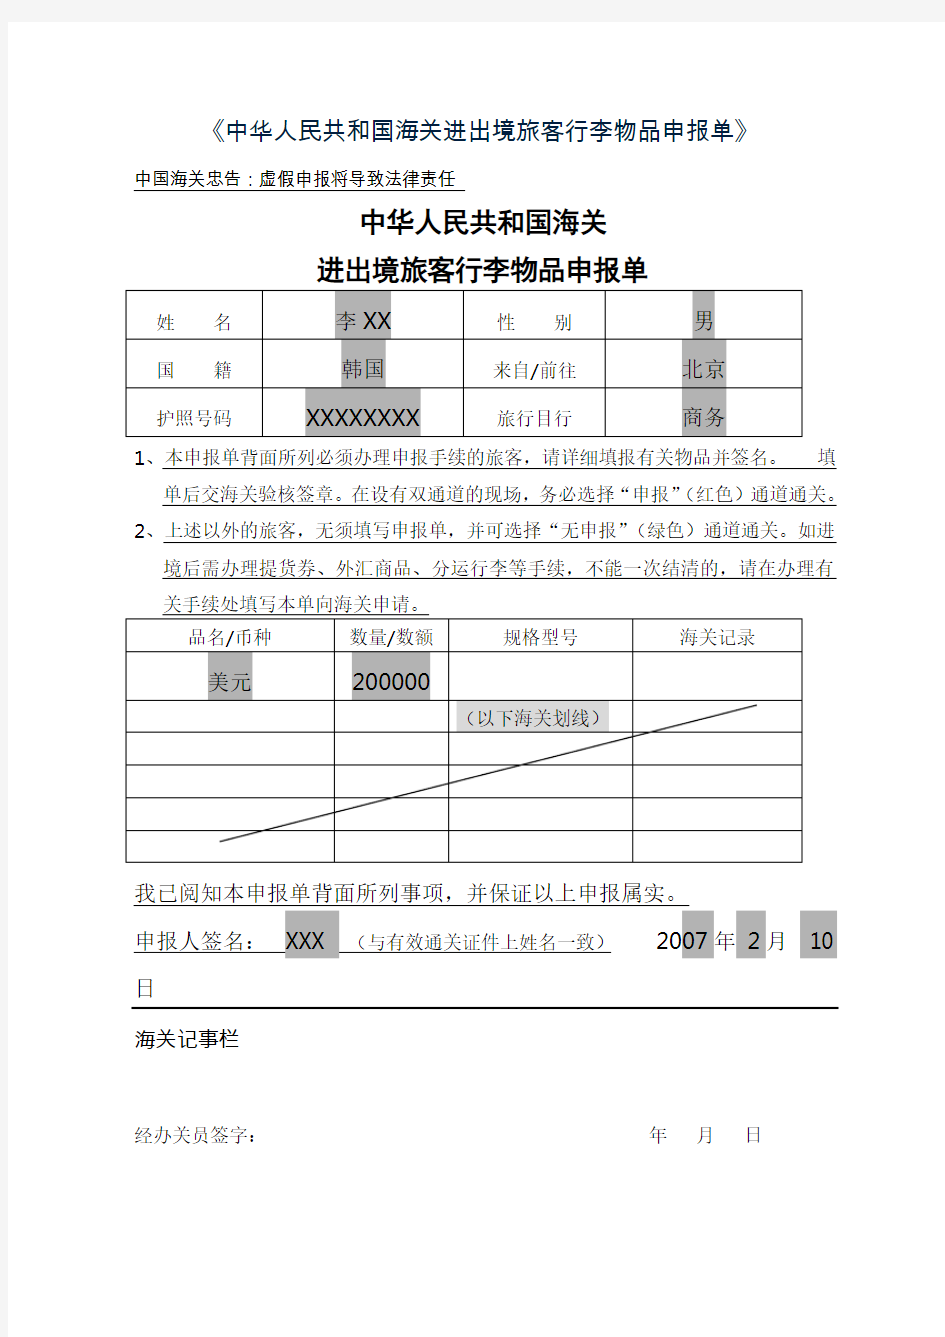 《中华人民共和国海关进出境旅客行李物品申报单》